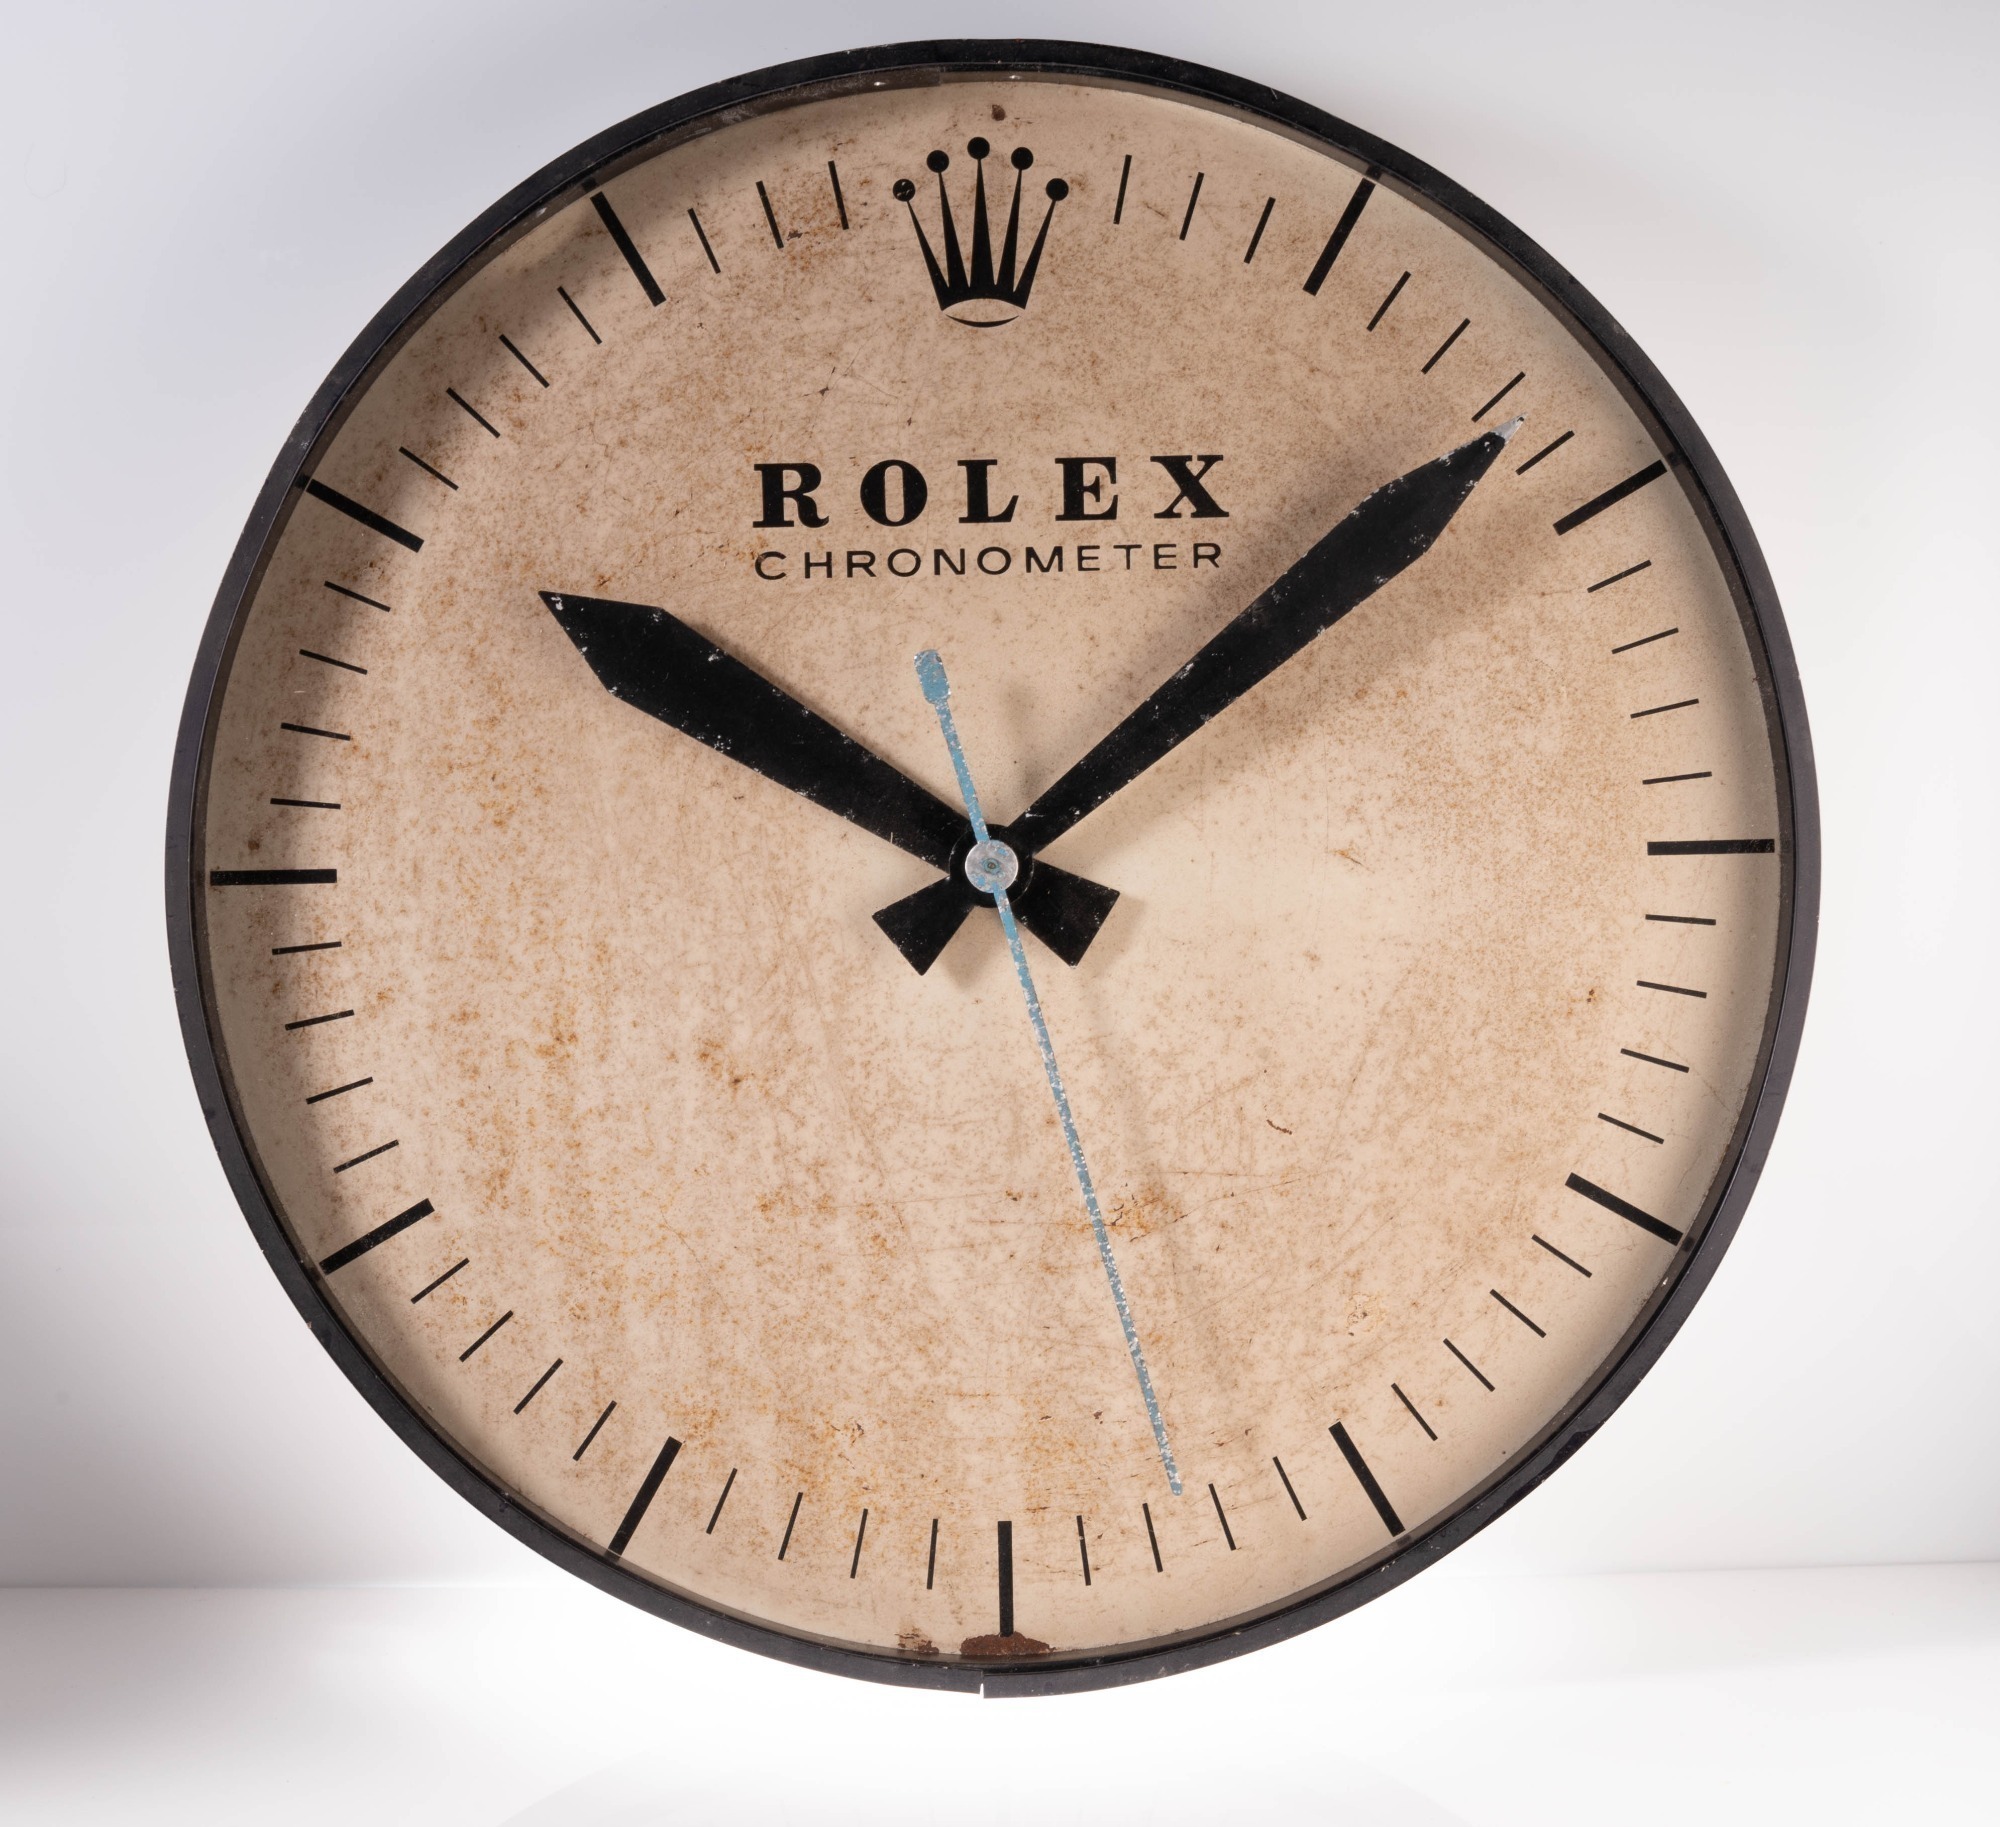 ROLEX CHRONOMETER ADVERTISING CLOCK